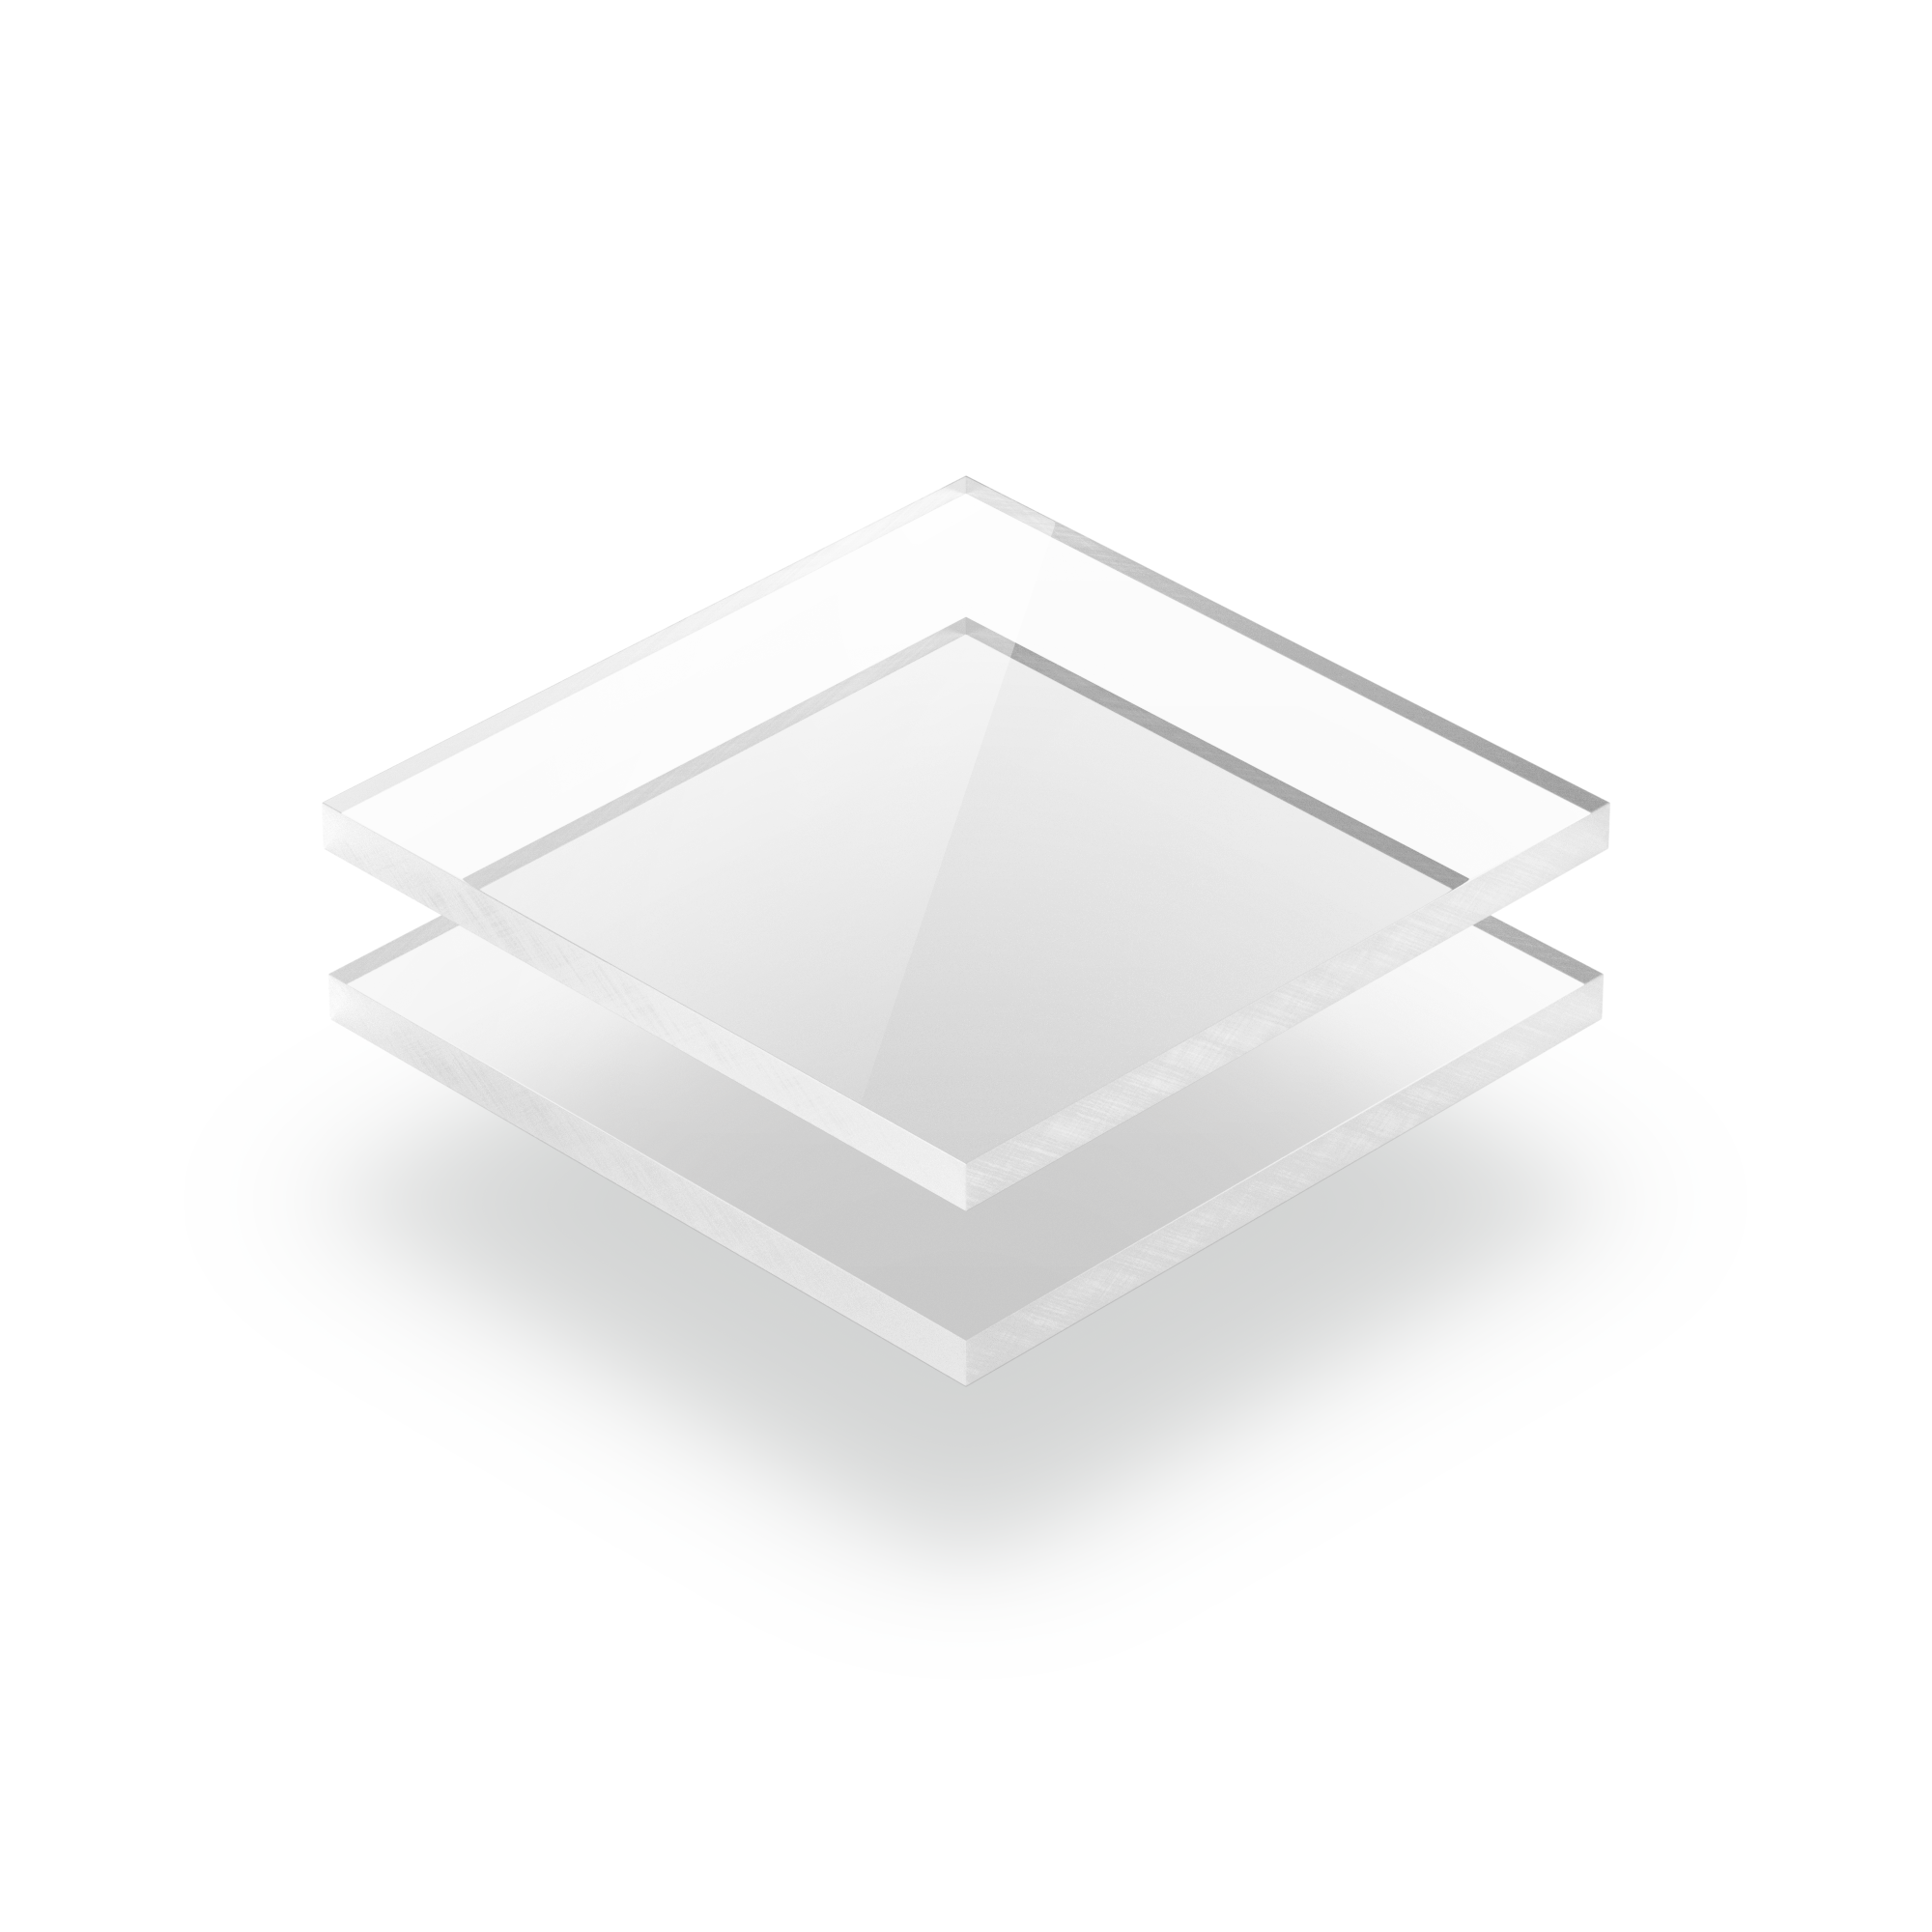 Plaque polycarbonate transparent 6mm